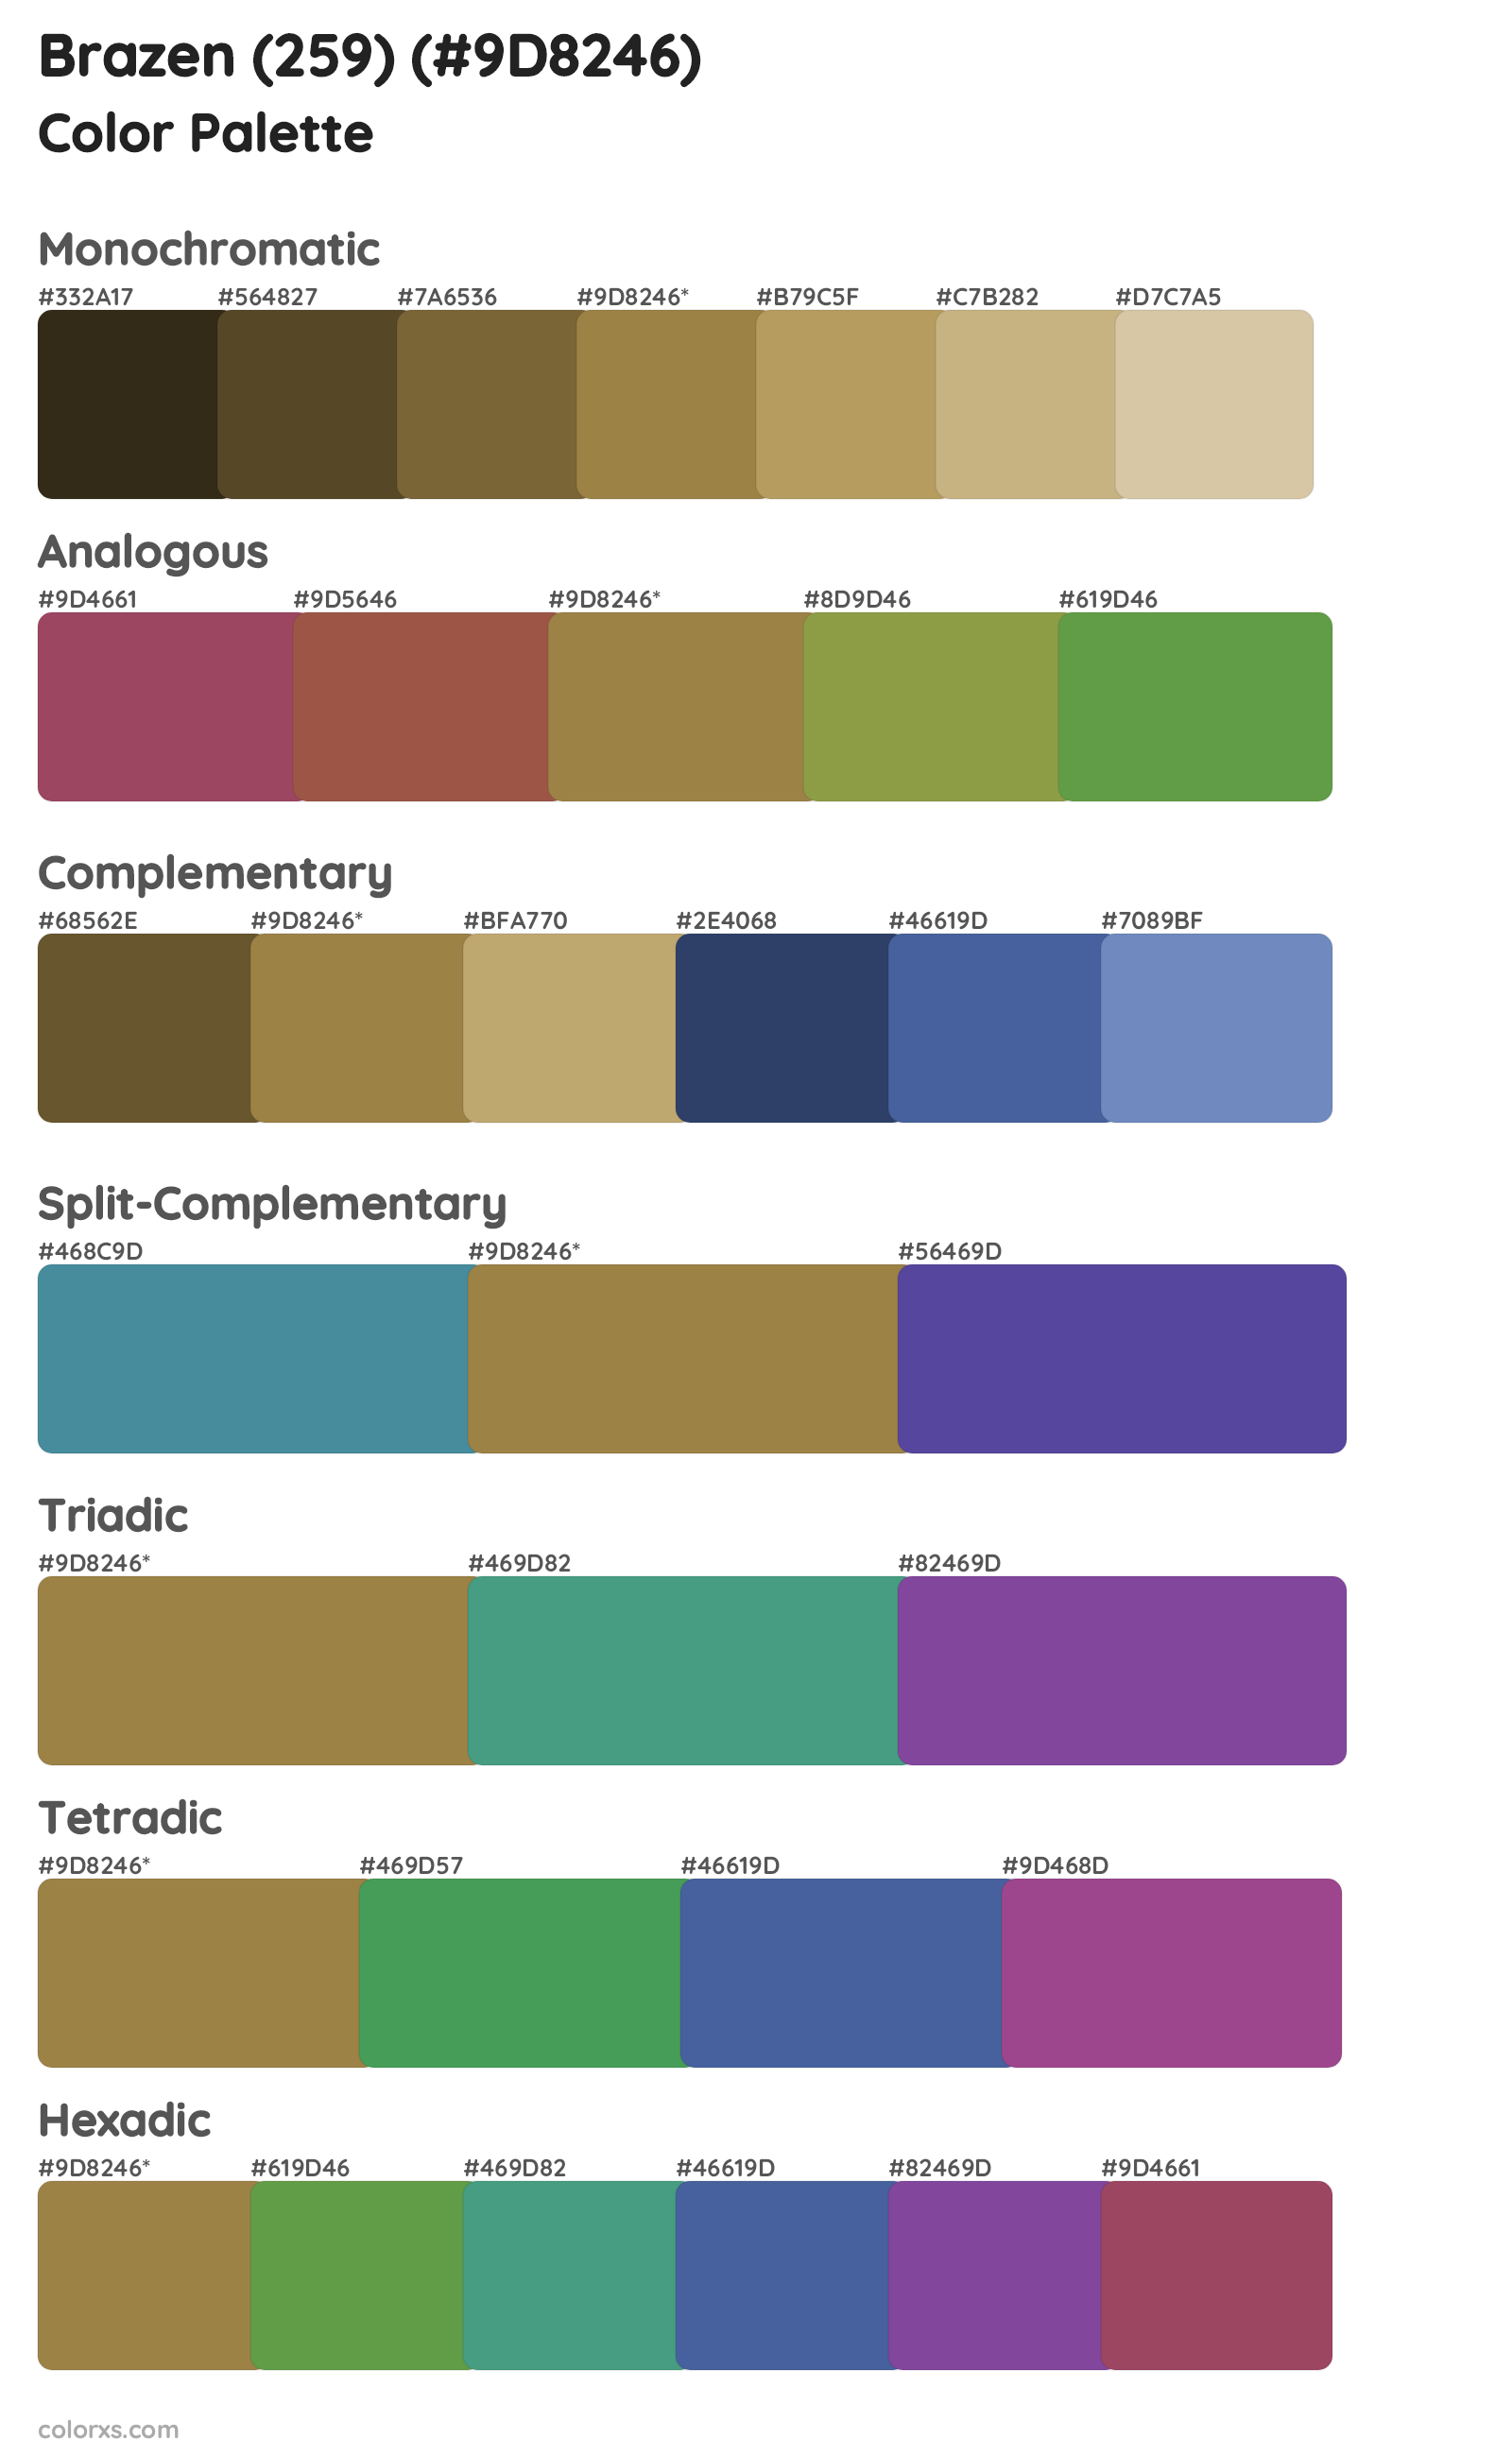 Brazen (259) Color Scheme Palettes